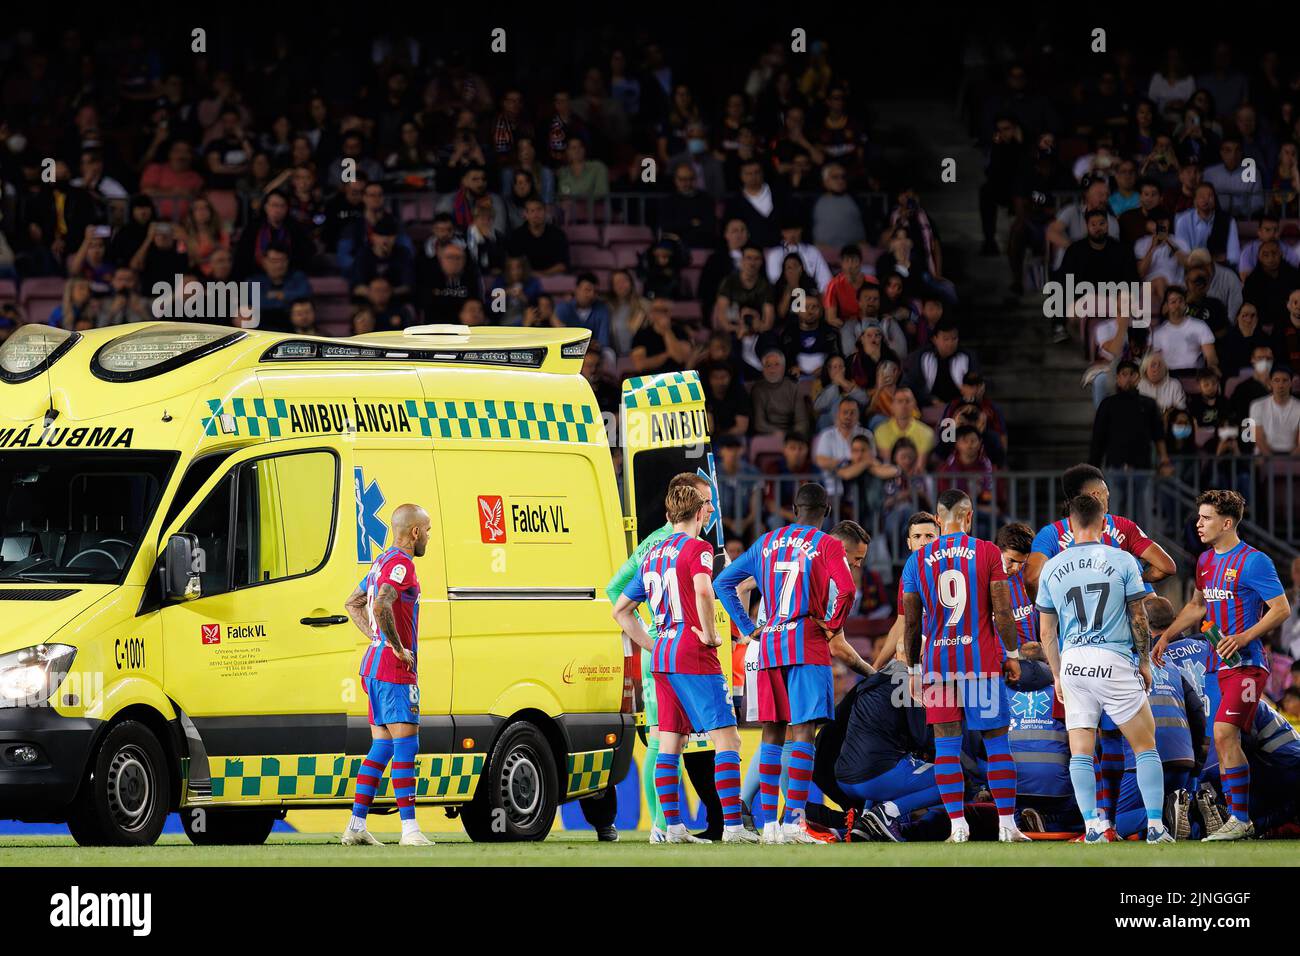 BARCELONA - MAYO 10: Una ambulancia en la hierba durante el partido de La Liga entre el FC Barcelona y el Real Club Celta de Vigo en el estadio Camp Nou el pasado mes de mayo Foto de stock